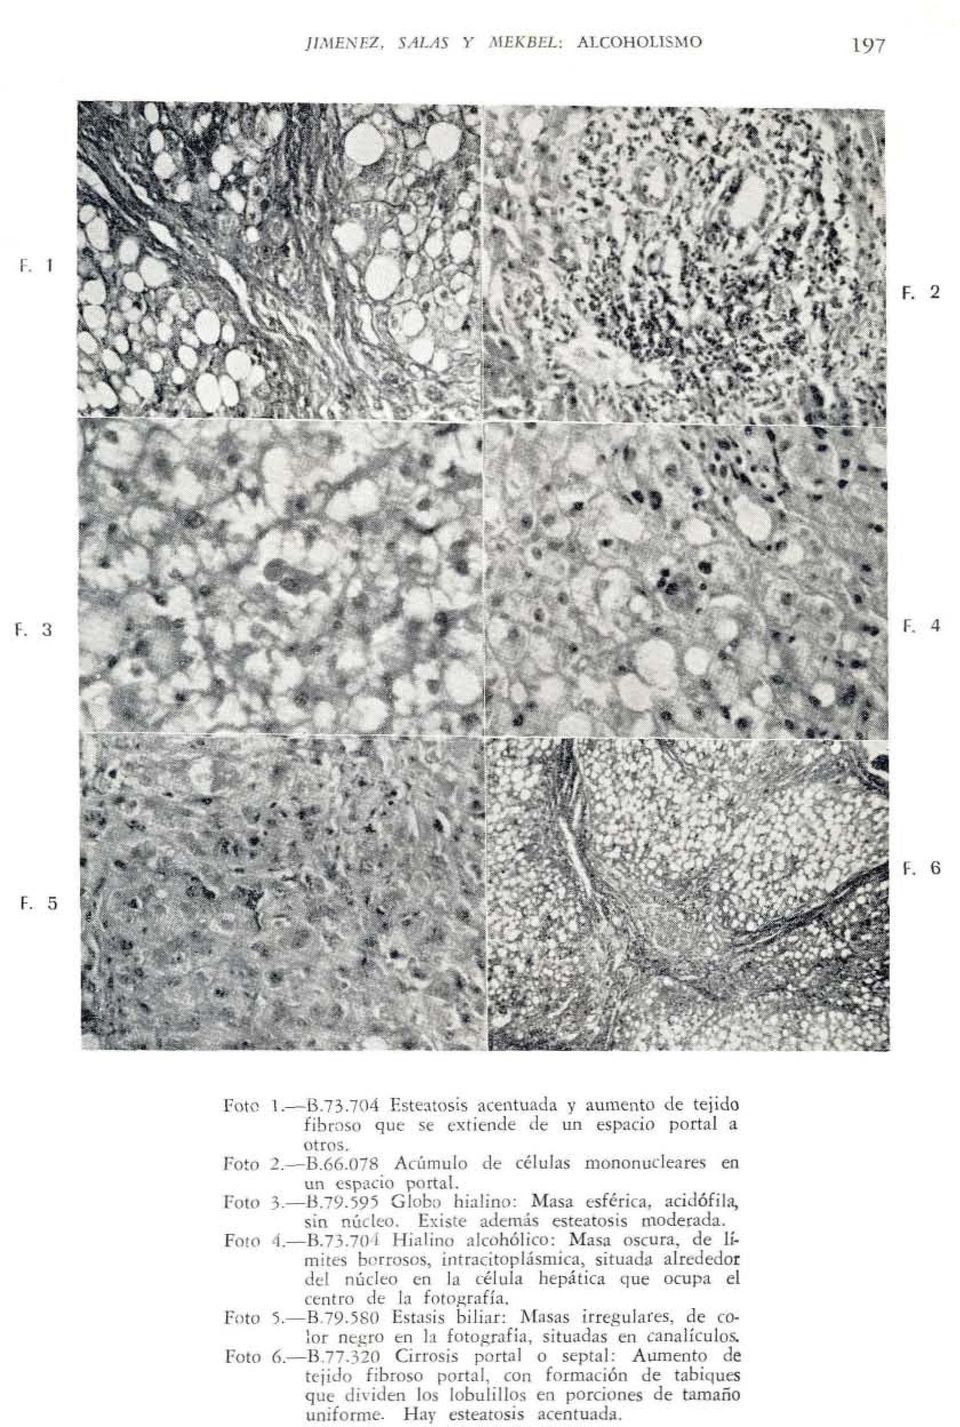 7Wl Hialino alcohólico: Masa oscura, de límites borrosos, intracitoplásmica, situada alrededor del núcleo en la célula hepática que ocupa el centro de la fotografía. Foto 5.-B79.